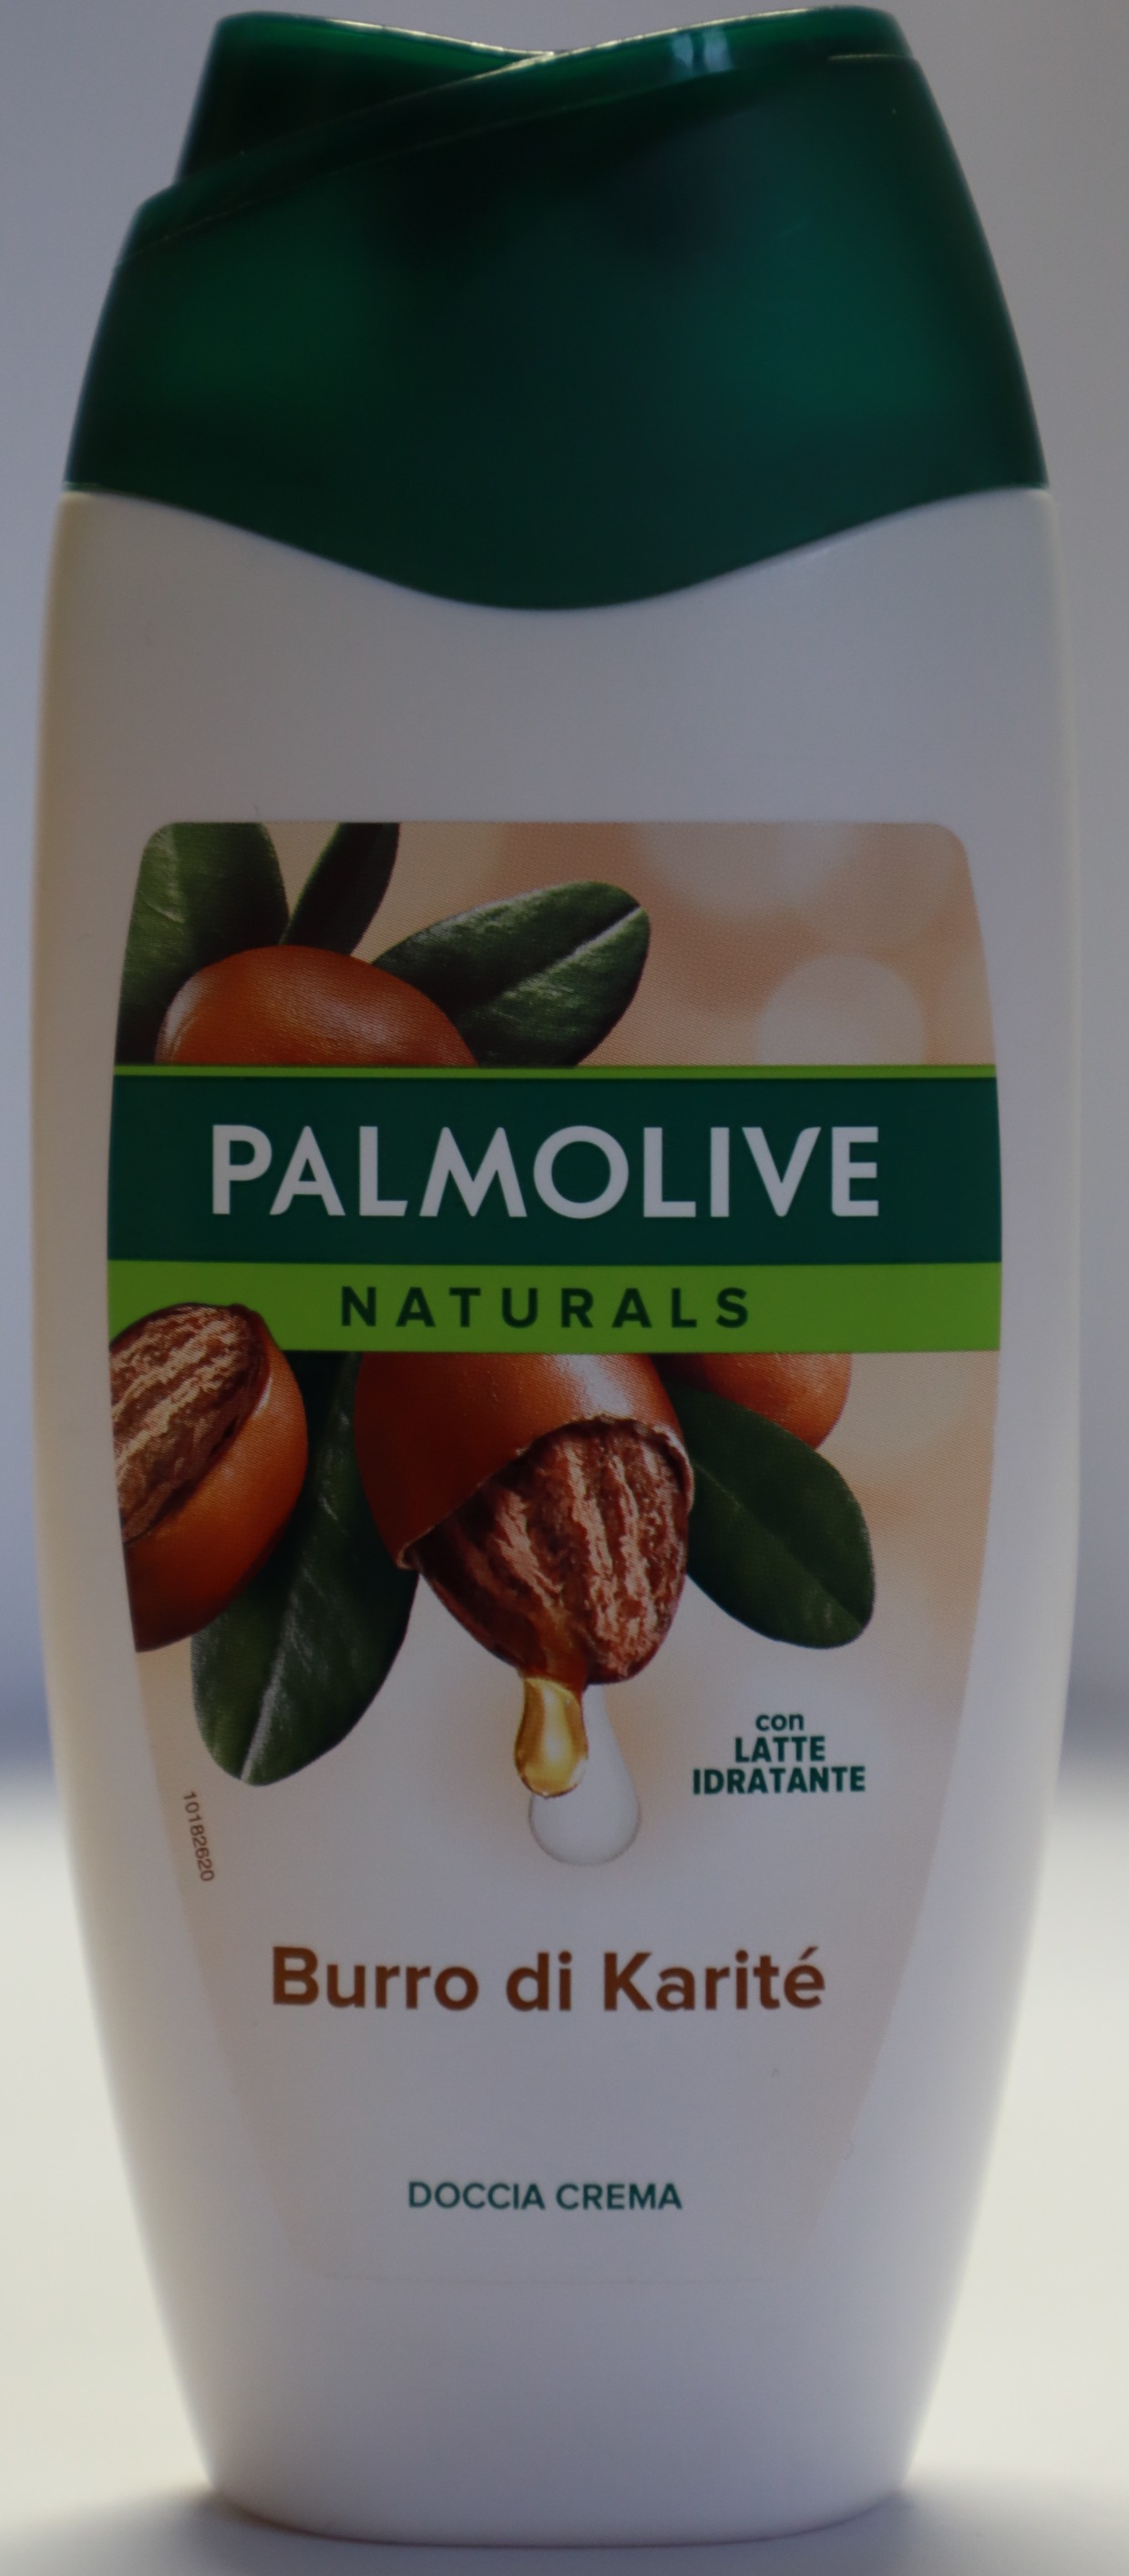 Palmolive naturals - burro di karitè – sprchový krém - foto prednej strany výrobku